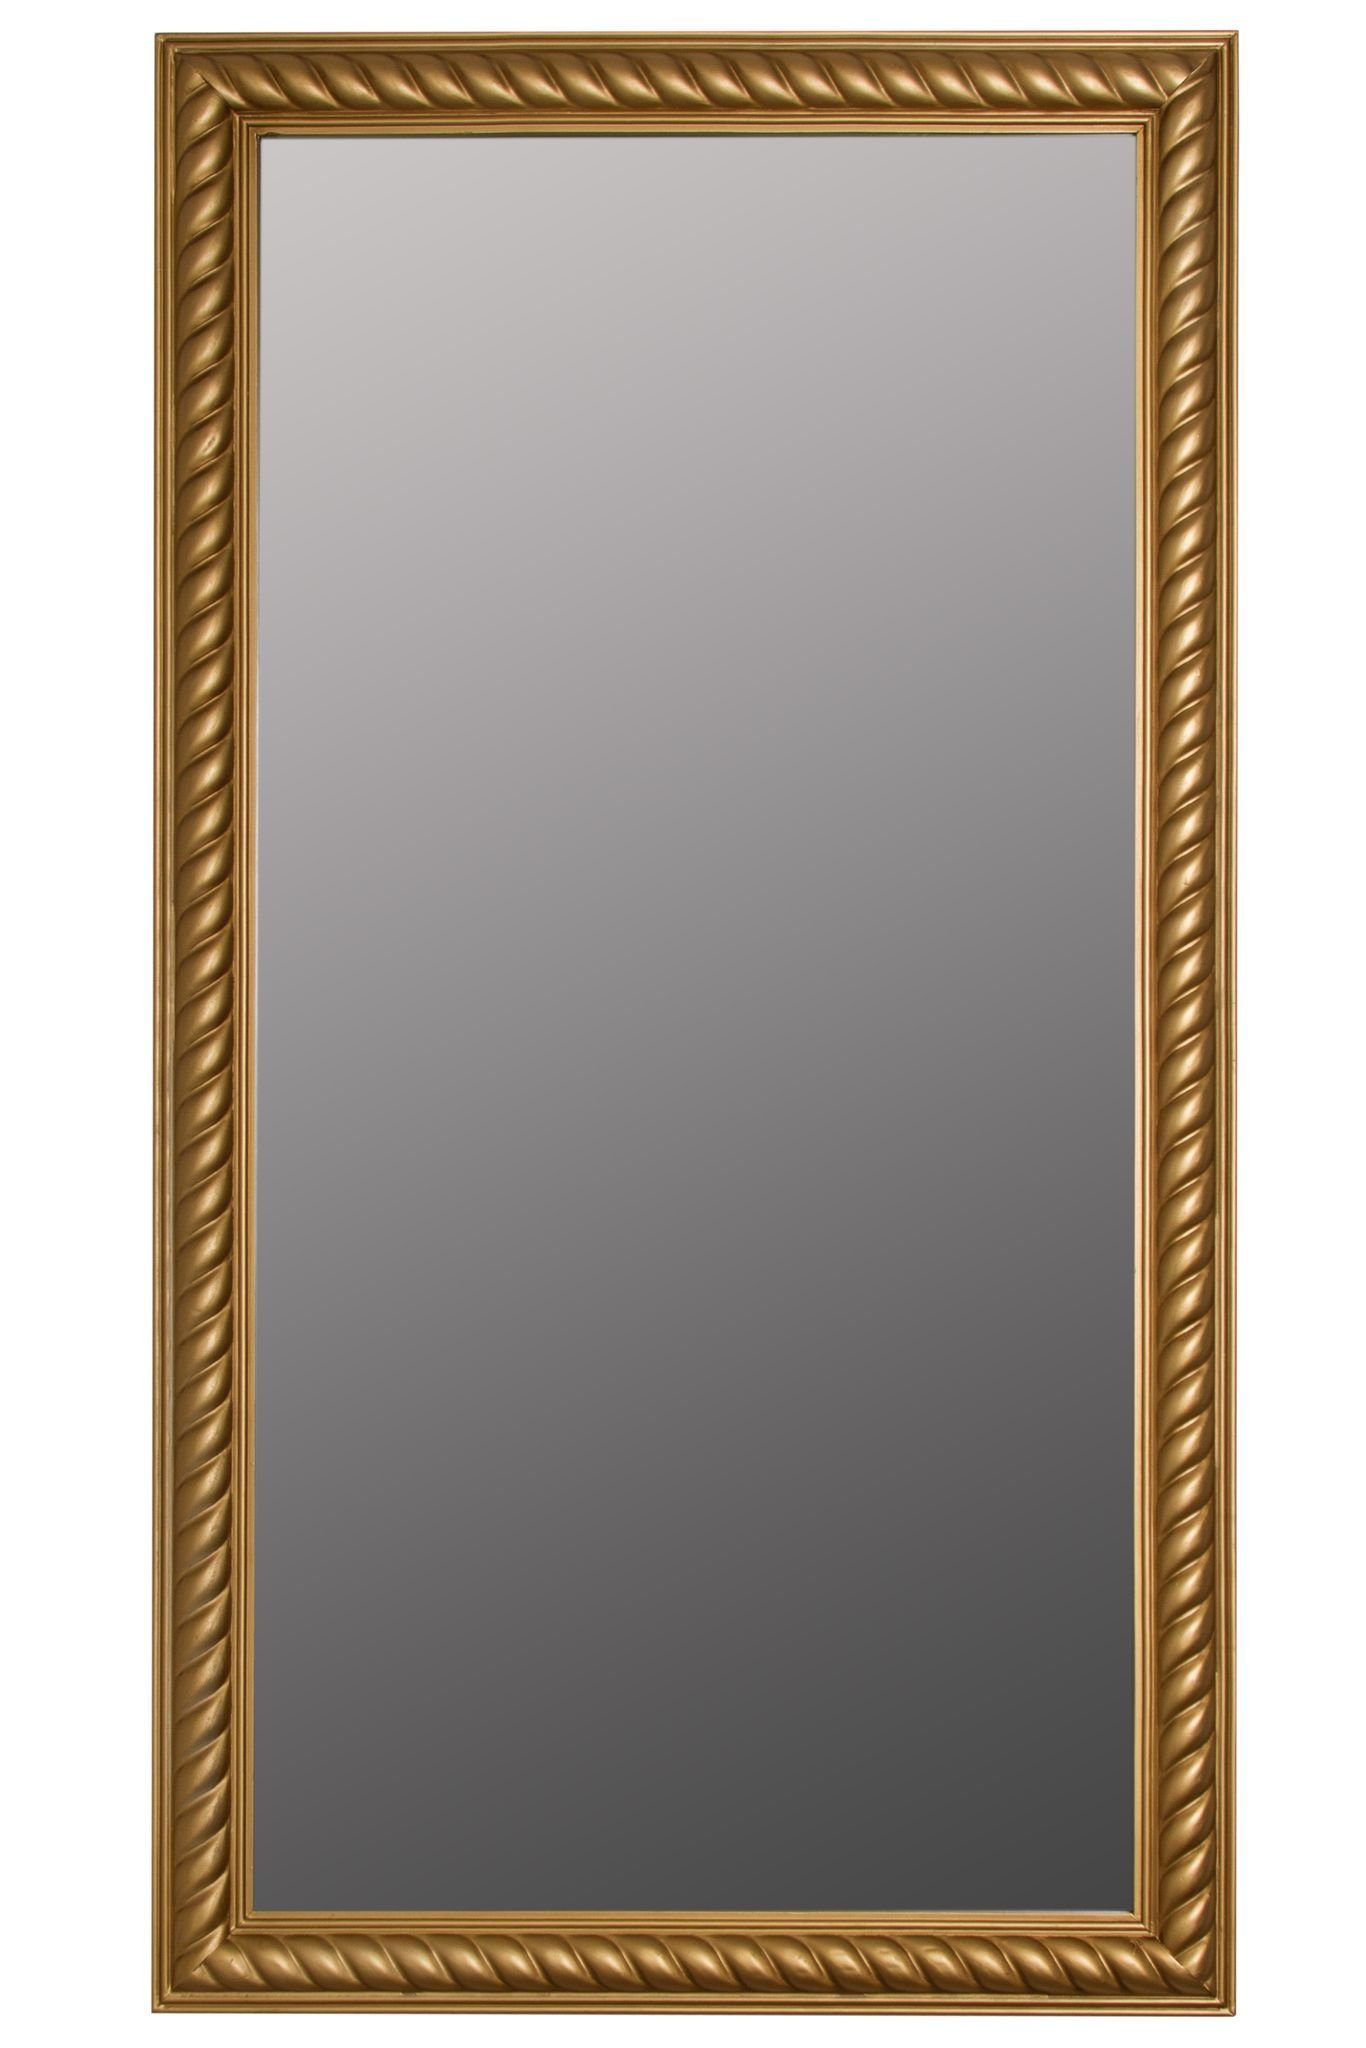 elbmöbel Wandspiegel Wandspiegel Spiegel Badezimmerspiegel, Wandspiegel: Kordelrahmen 72x132x7 cm holz gold vintage gold antik | gold